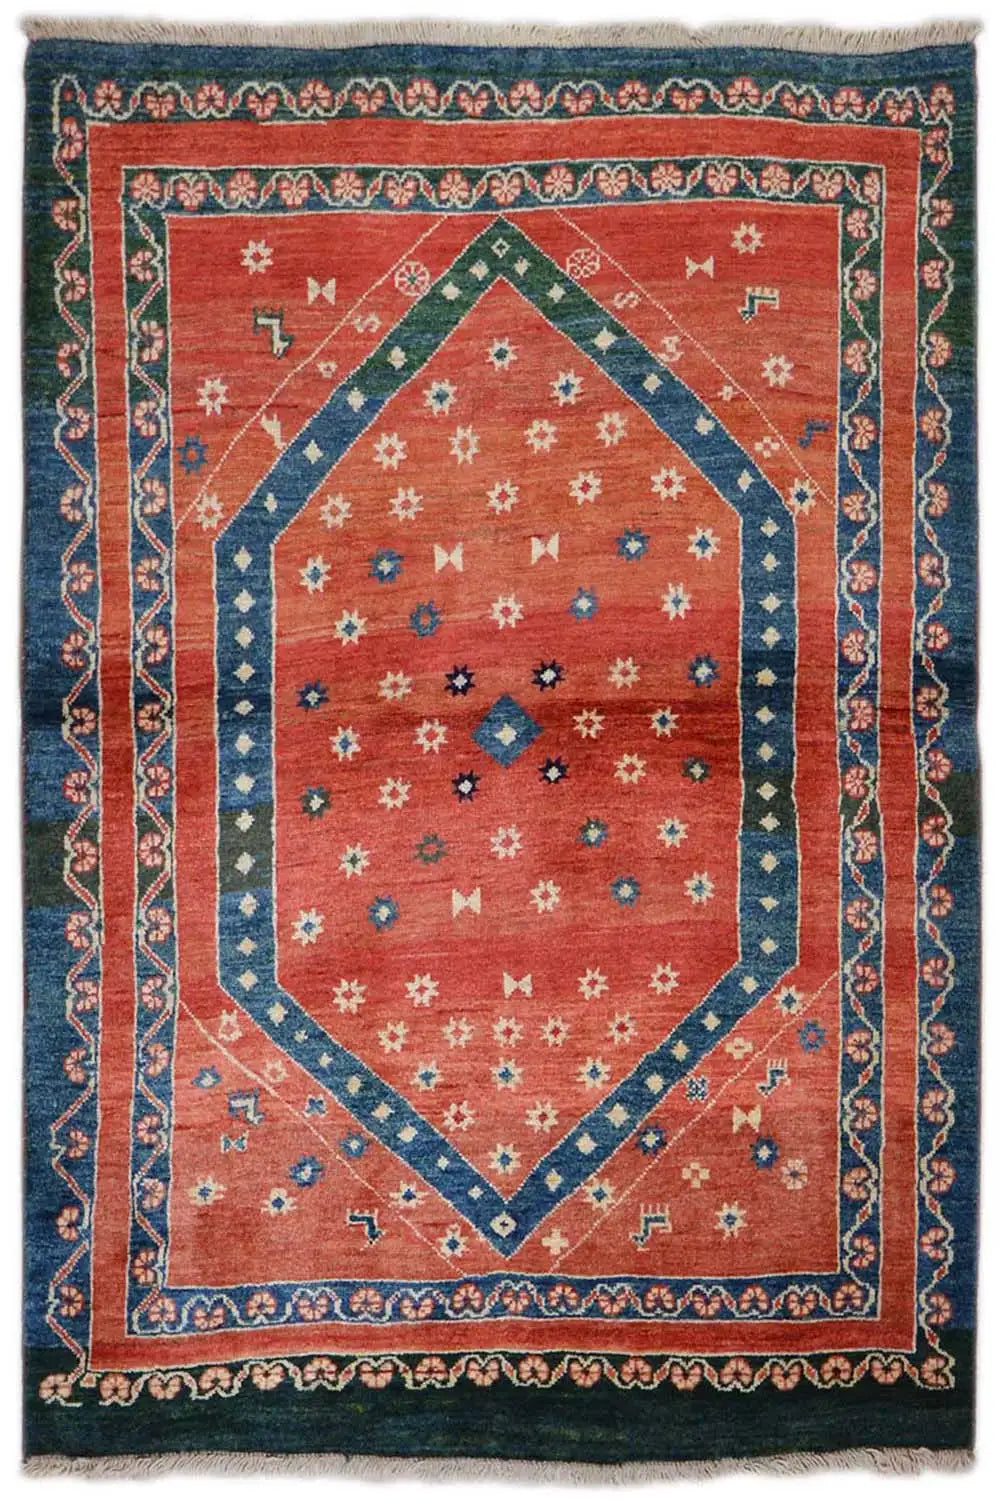 Yalameh Kooh Sabz Teppich - 6816 (150x111cm) - German Carpet Shop